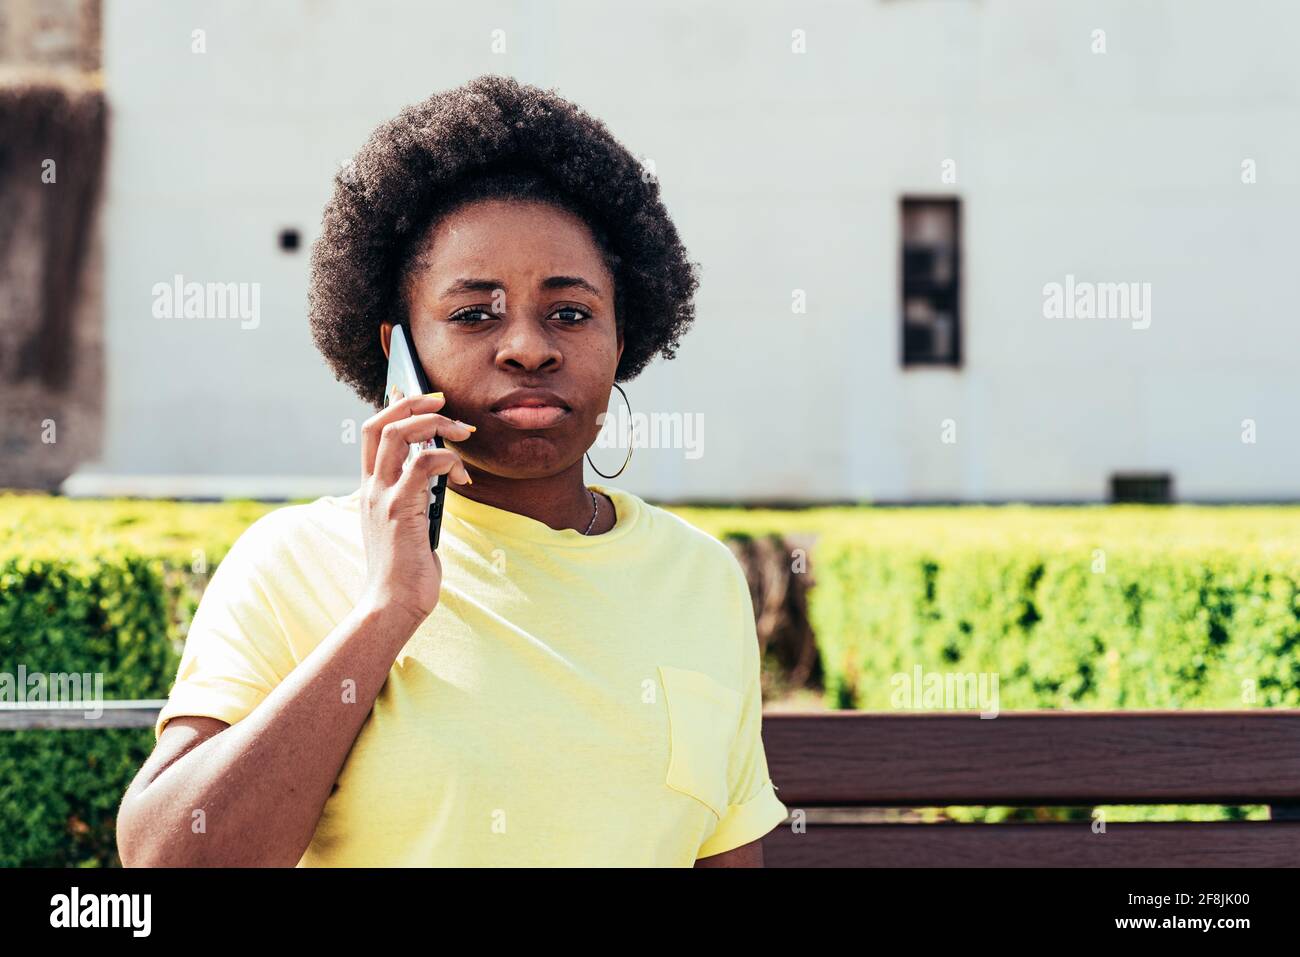 Portrait eines schwarzen Mädchens mit afrohaaren und Reifringen, die in einem städtischen Stadtraum anrufen. Stockfoto